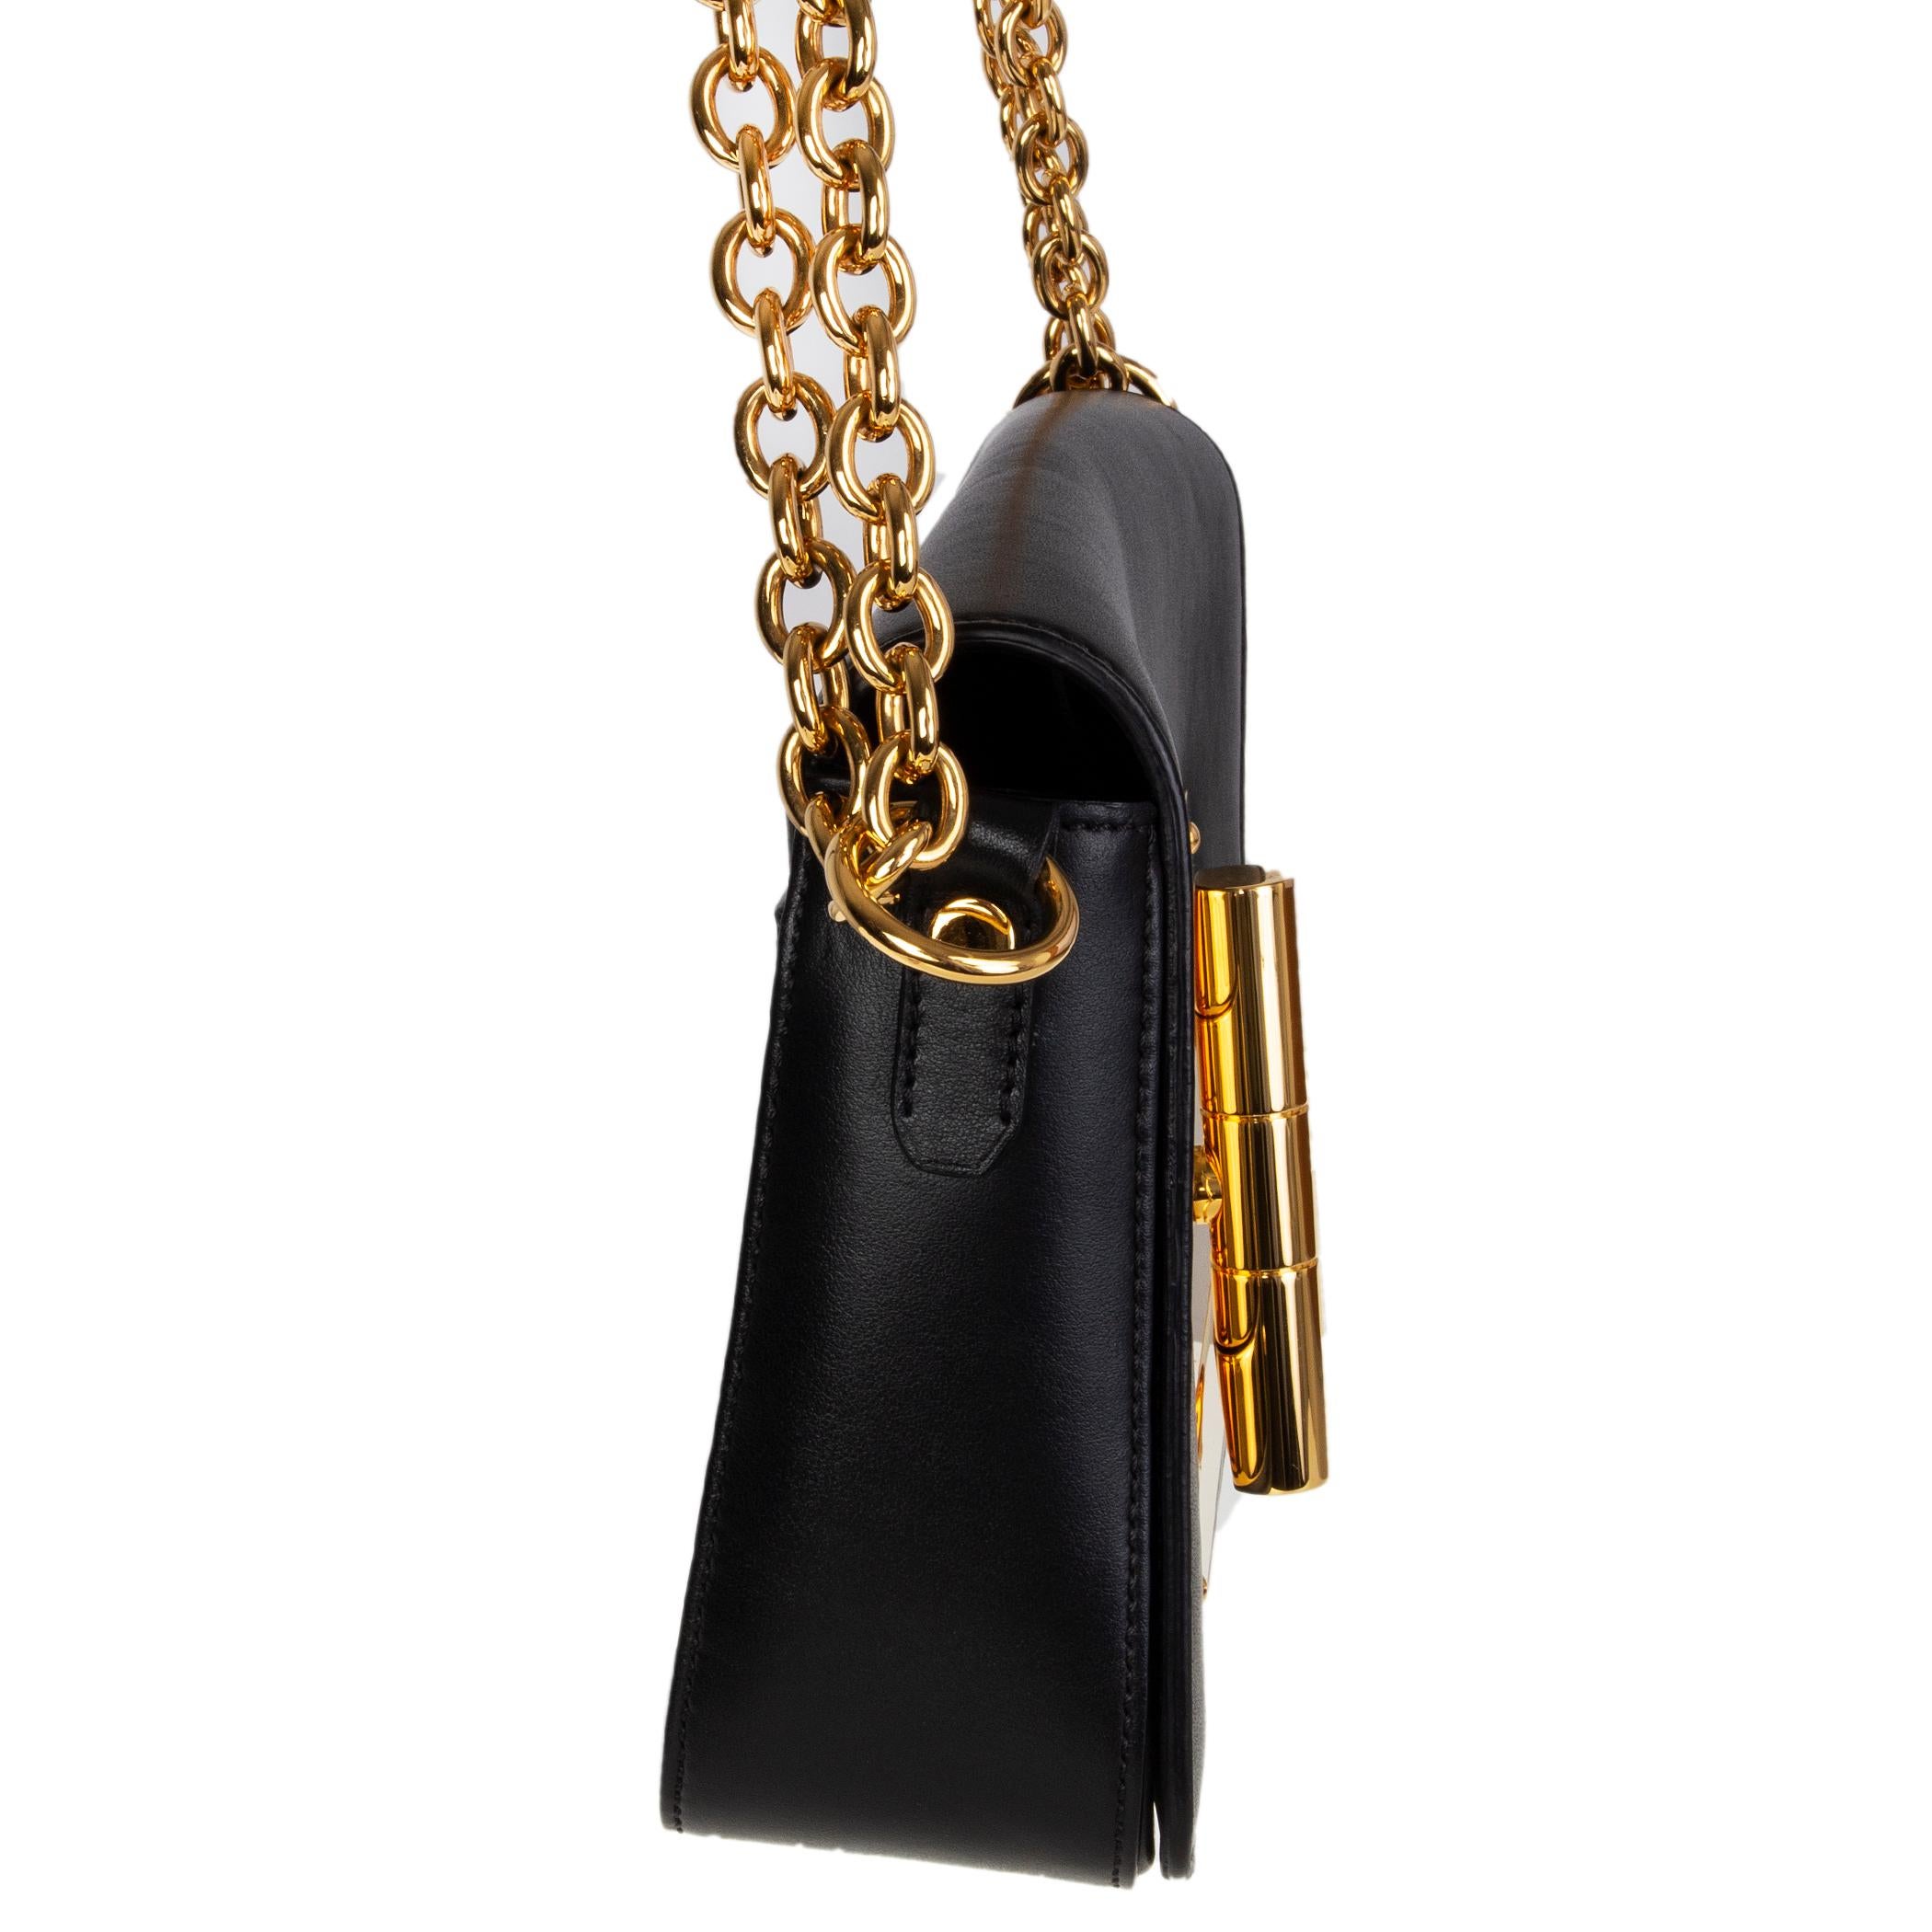 Le sac transversal 'Natalia' de Tom Ford en cuir de veau noir est doté d'un rabat et d'une fermeture tournante surdimensionnée en métal doré. Poche fendue sur le côté arrière. Doublure en microfibre noire avec une poche zippée au dos. A été porté et